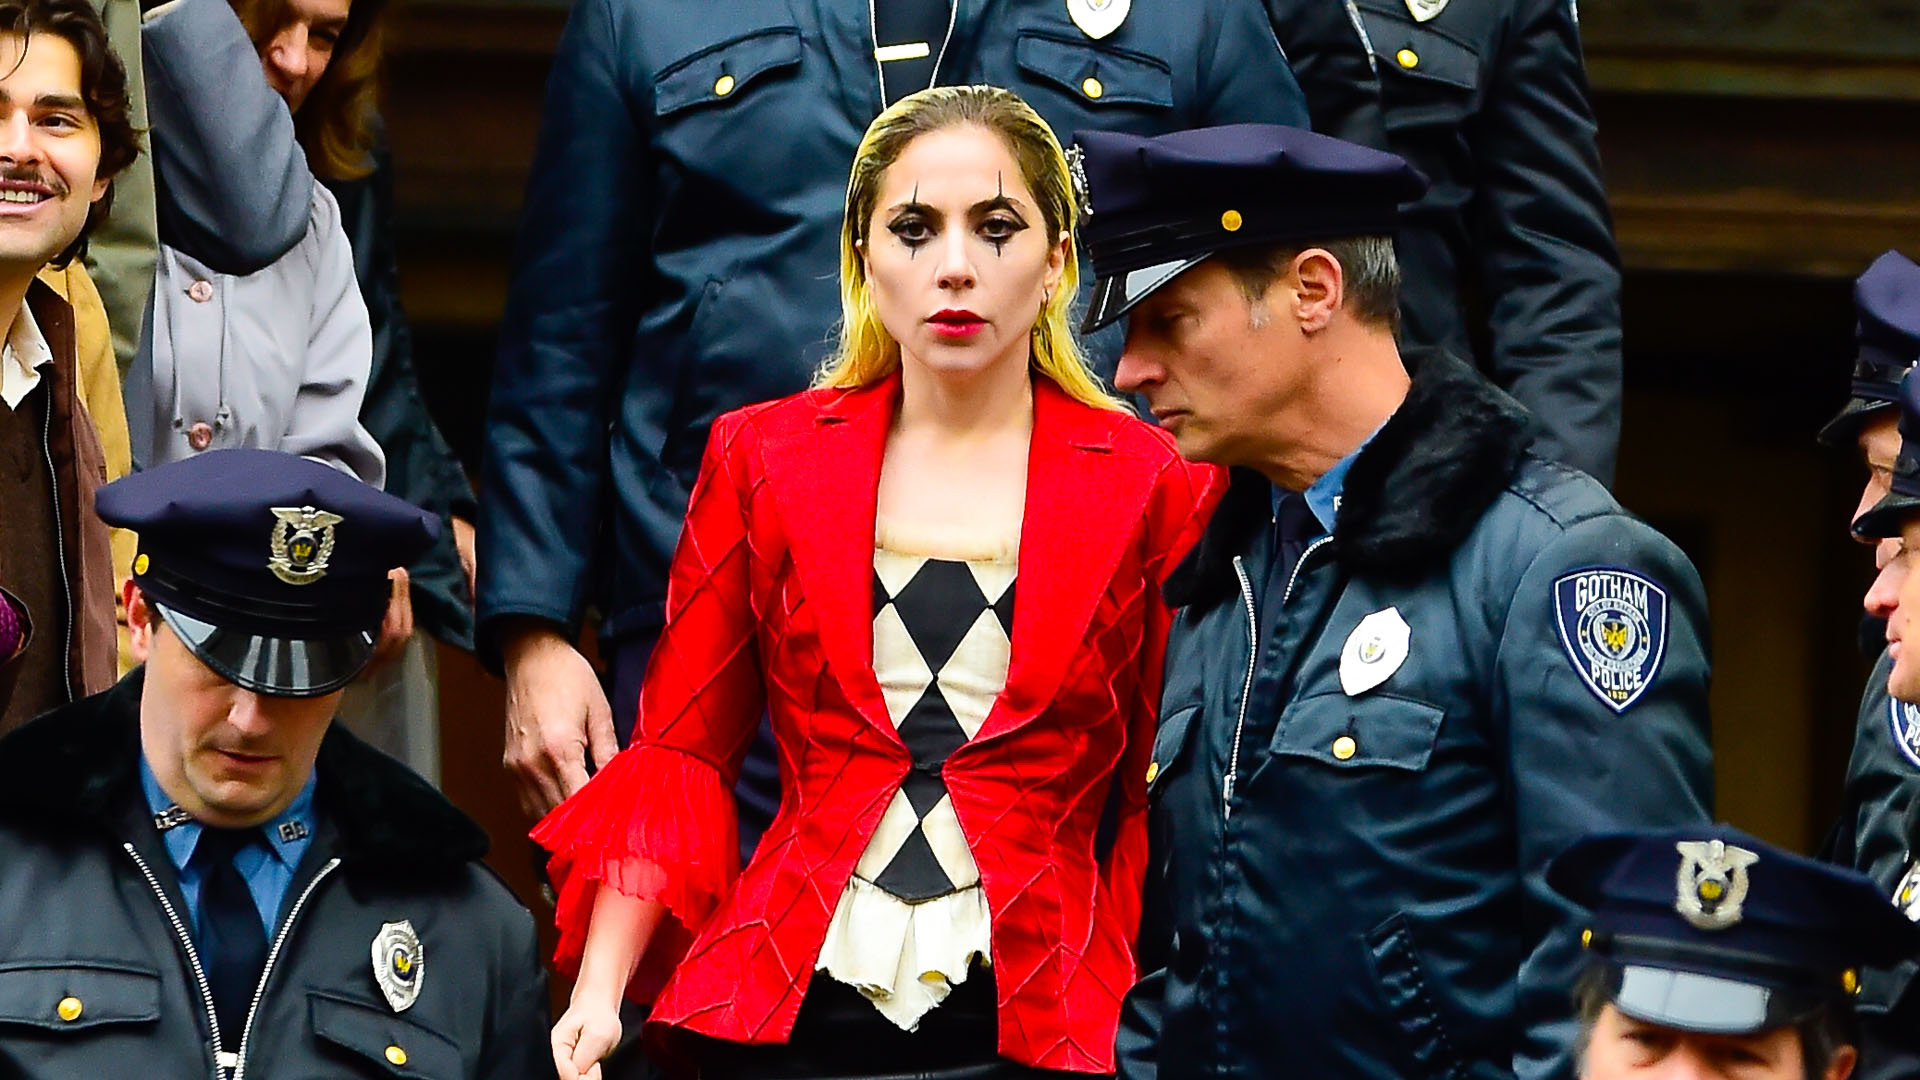 Joker 2 set photos give first real look at Lady Gaga’s Harley Quinn